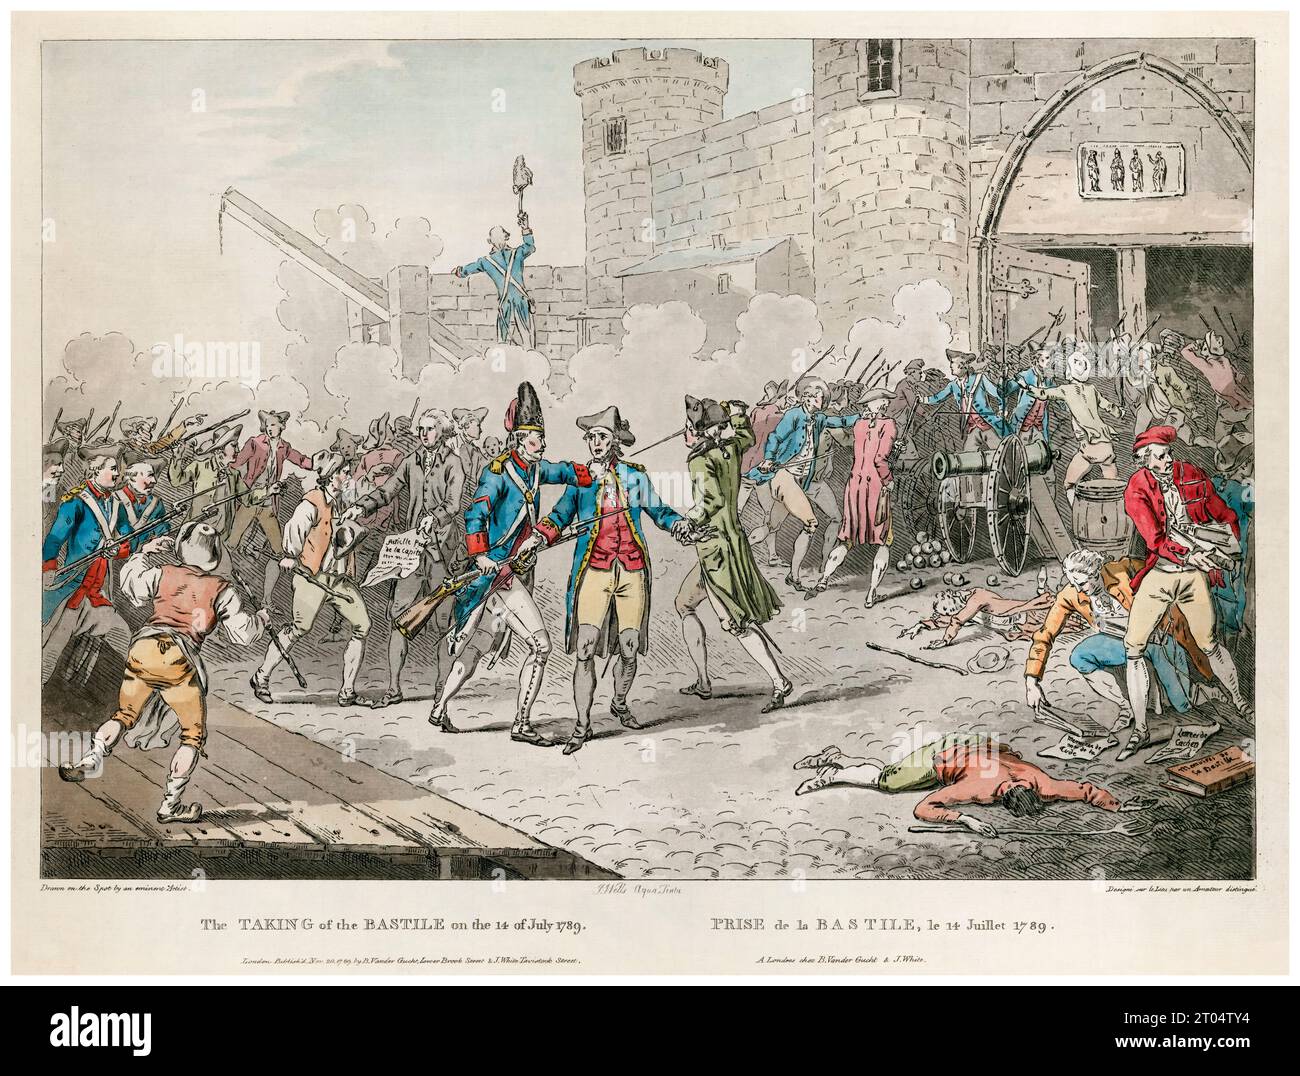 L'arrestation de Bernard René Jourdan, marquis de Launay, à la prise de la Bastille, le 14 juillet 1789, gravure coloriée à la main par John Wells, 1789 Banque D'Images